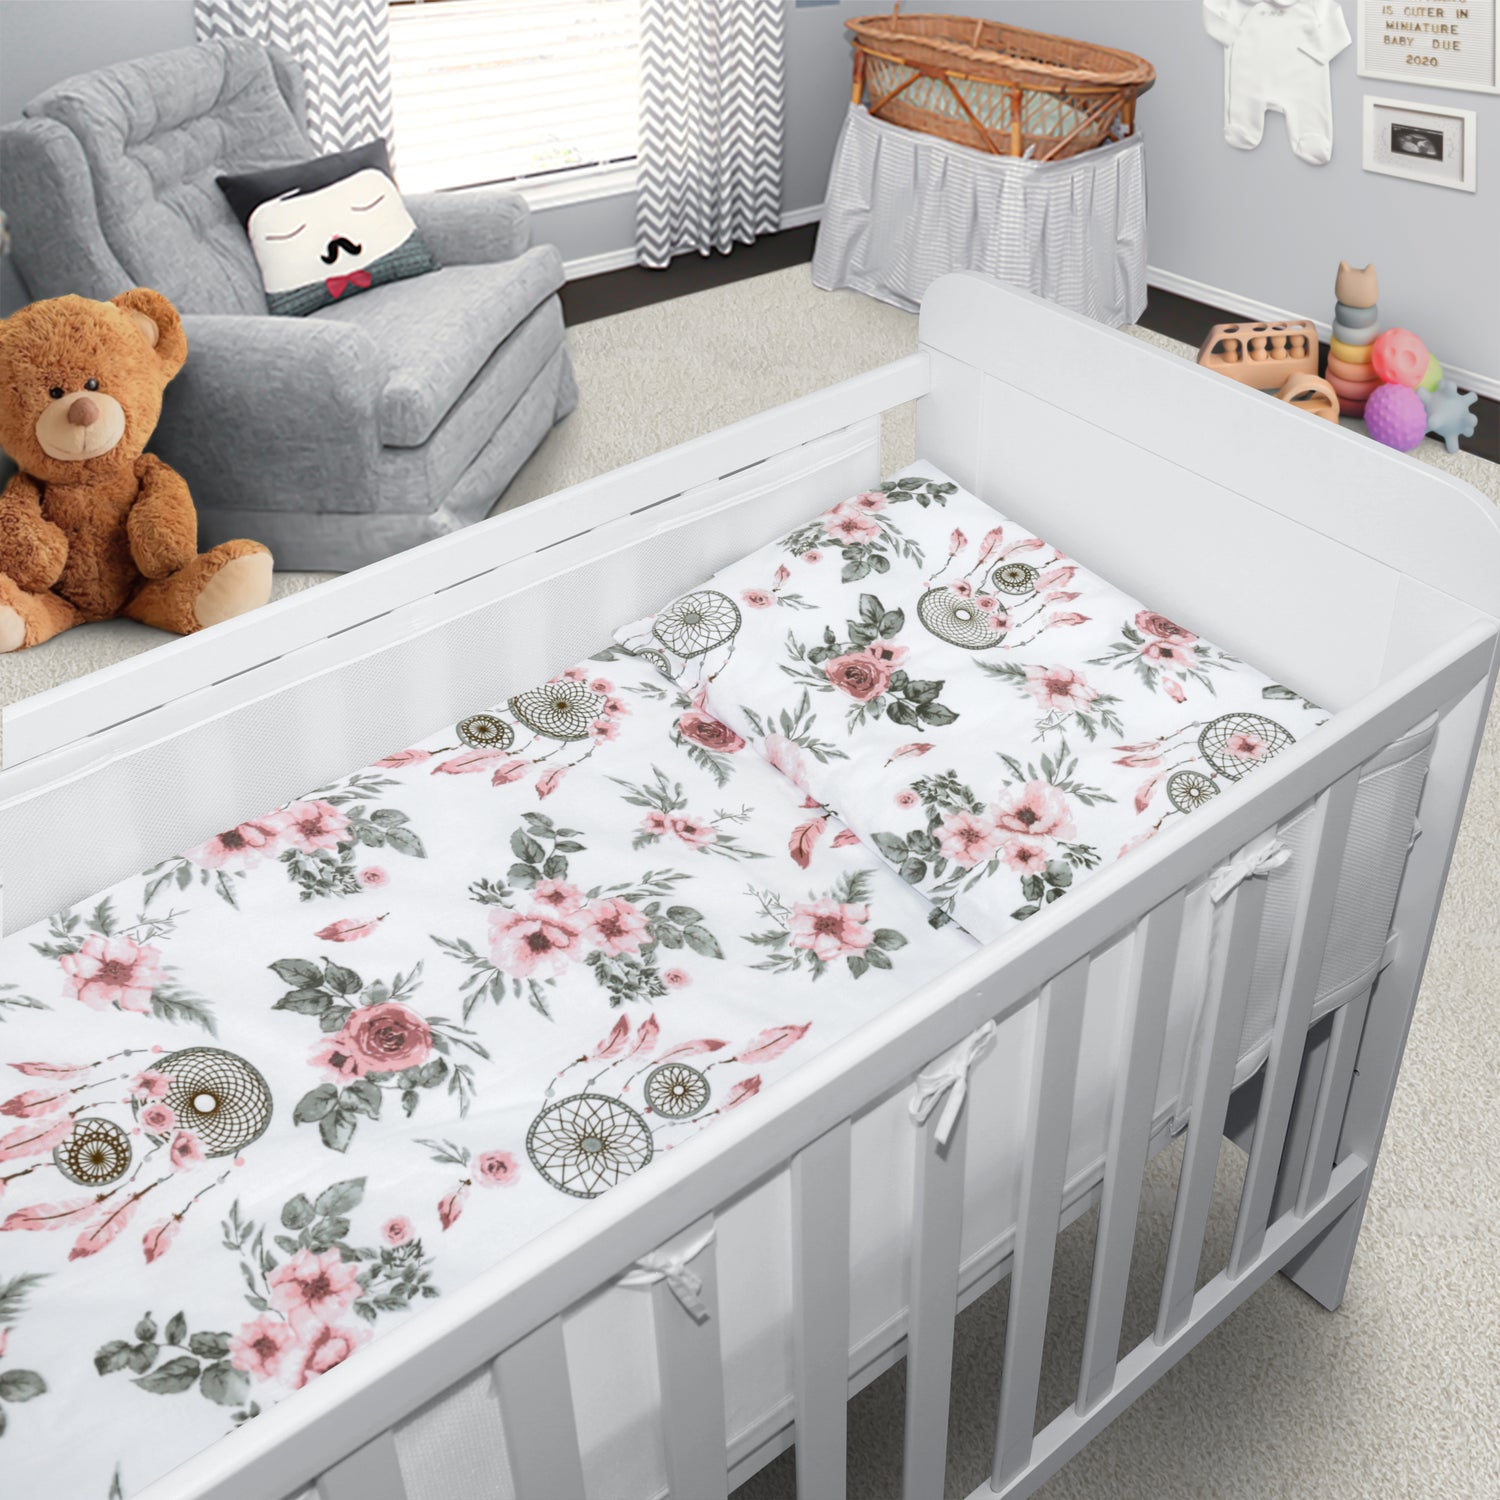 Baby Cot Bedding Set 6Pc Fit Cot 120x60cm Dream Catcher Peach